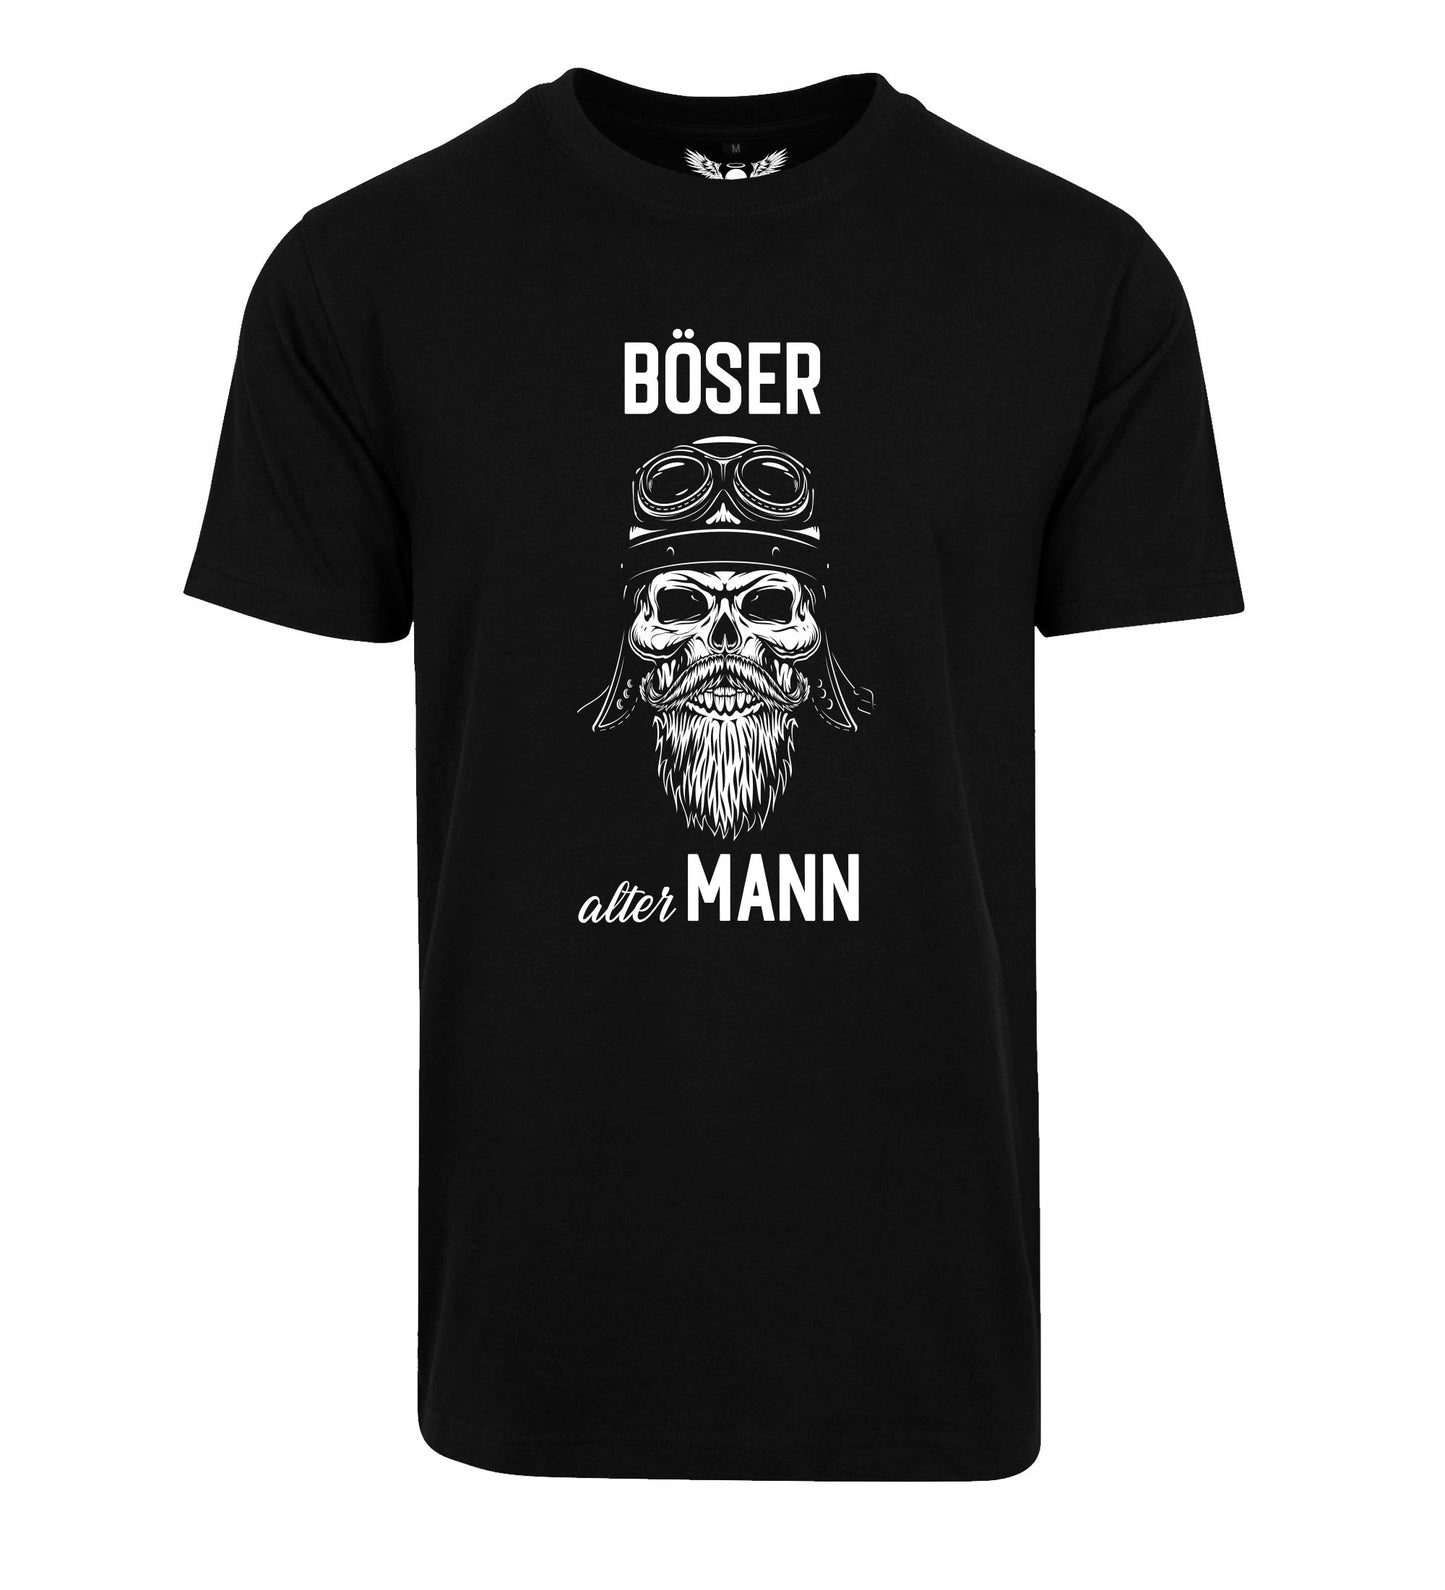 Herren T-Shirt: Böser alter Mann